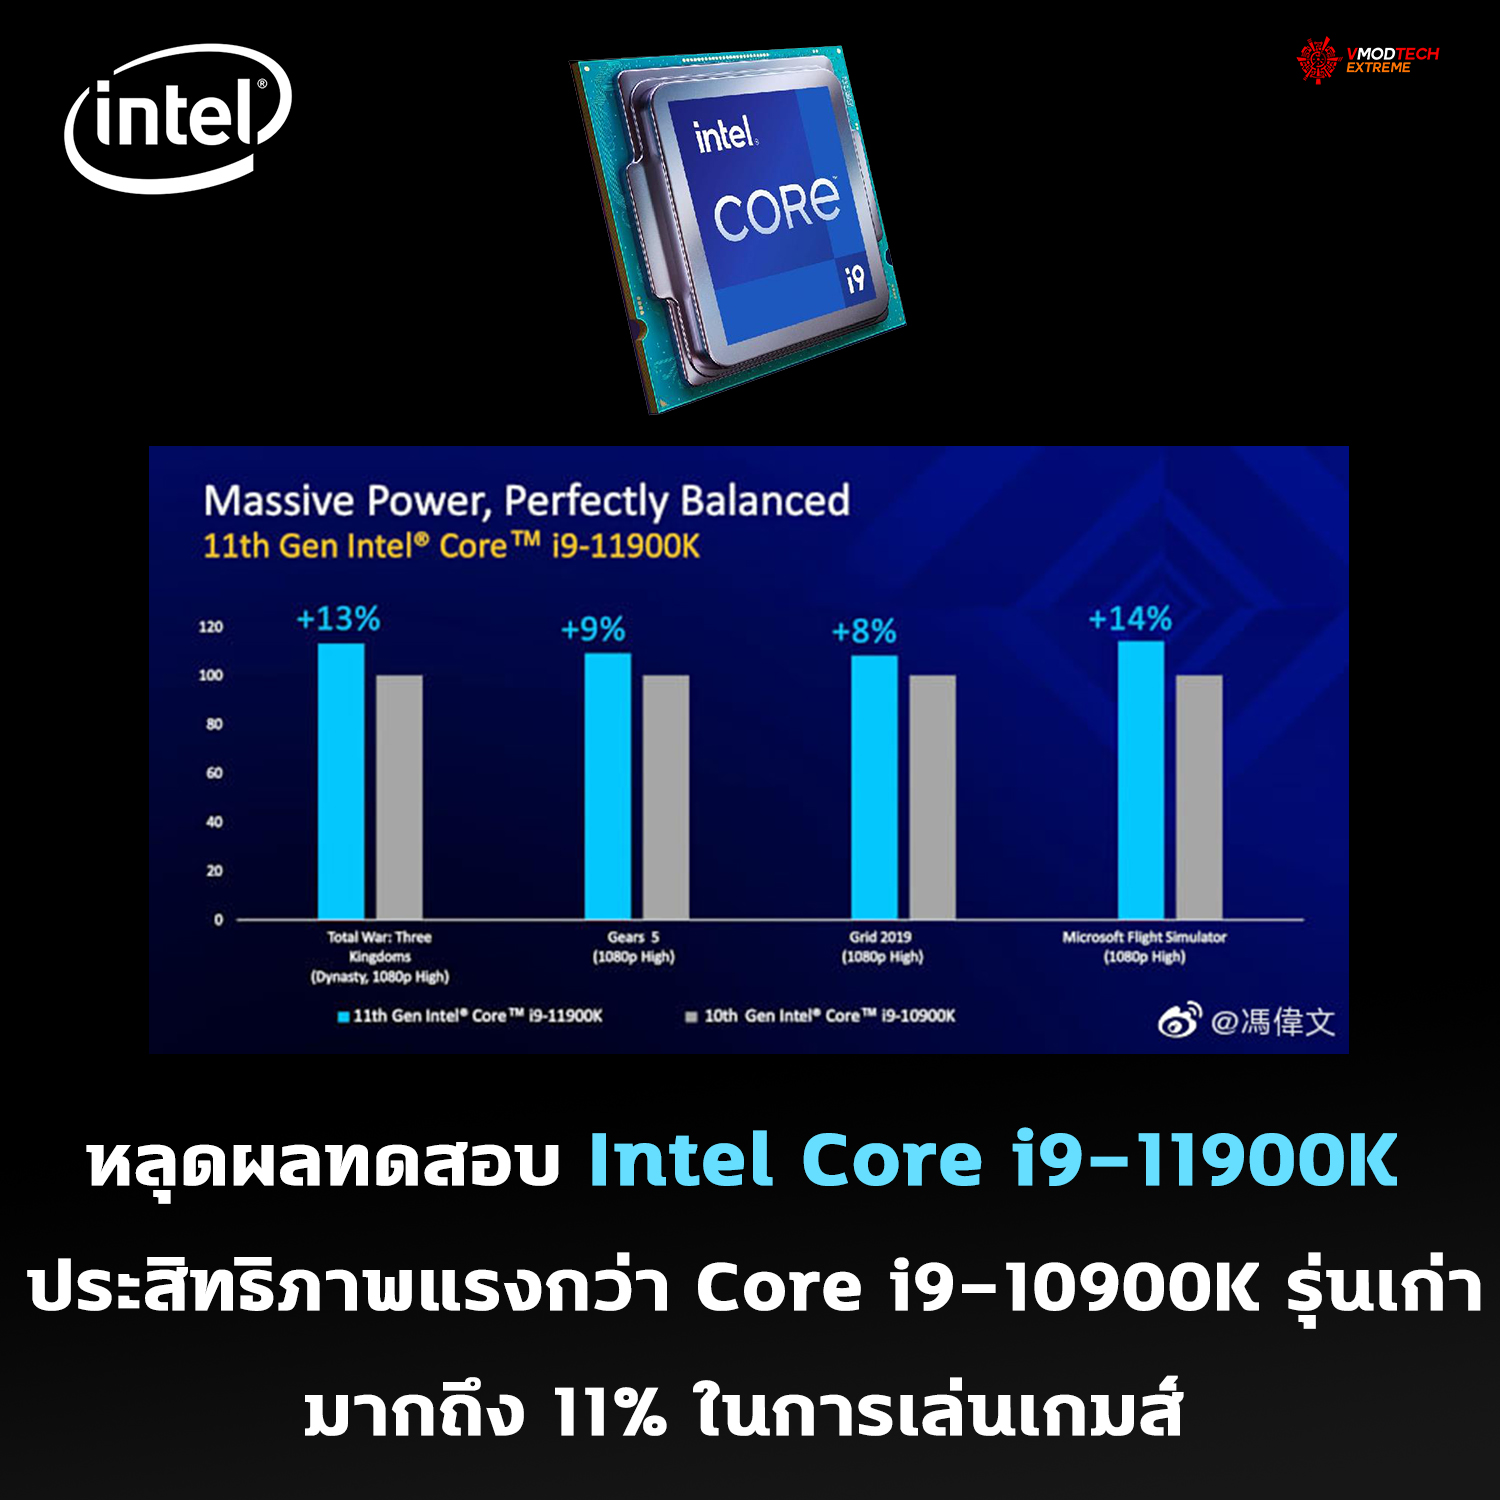 intel core i9 11900k benchamrk หลุดผลทดสอบ Intel Core i9 11900K ประสิทธิภาพแรงกว่า Core i9 10900K รุ่นเก่ามากถึง 11% ในการเล่นเกมส์ 